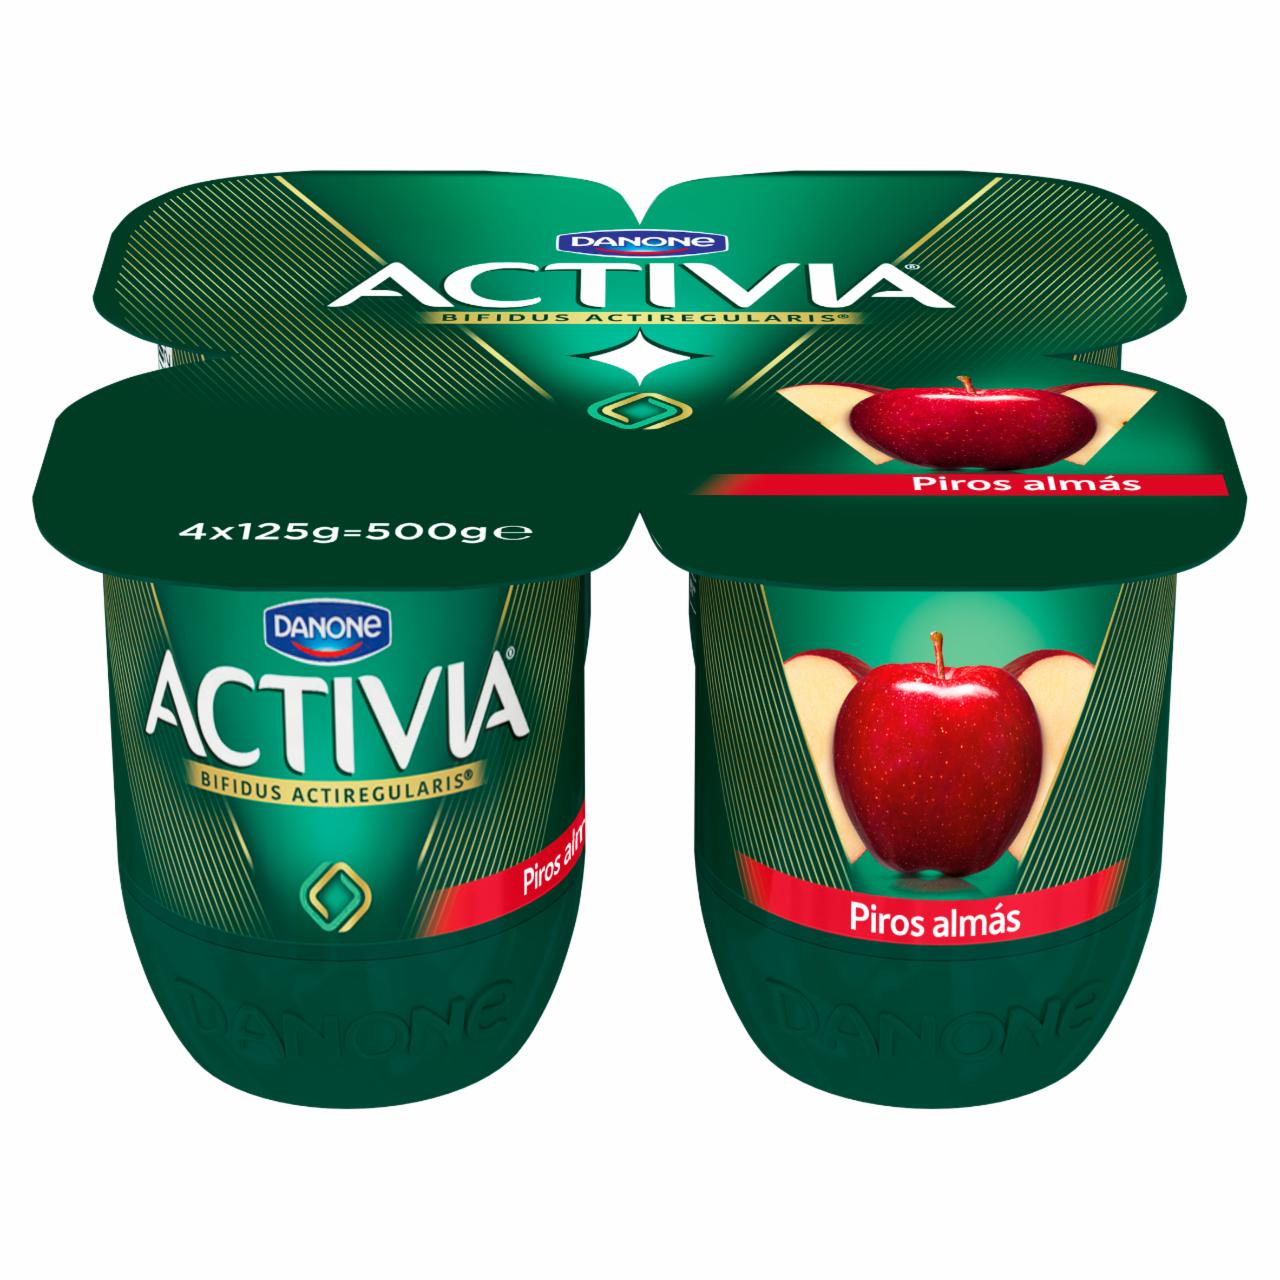 Képek - Danone Activia élőflórás, zsírszegény piros almás joghurt 4 x 125 g